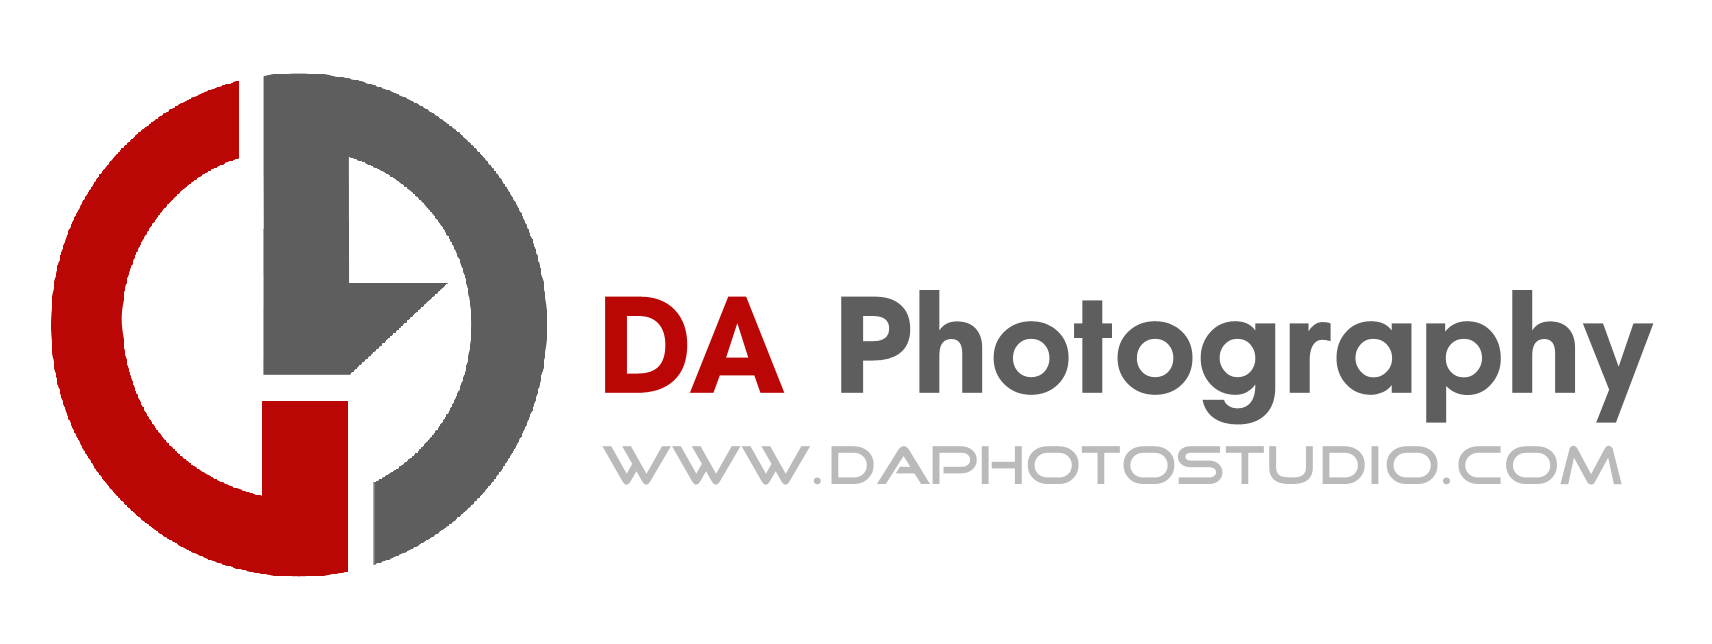 DA Photography Transparent Logo